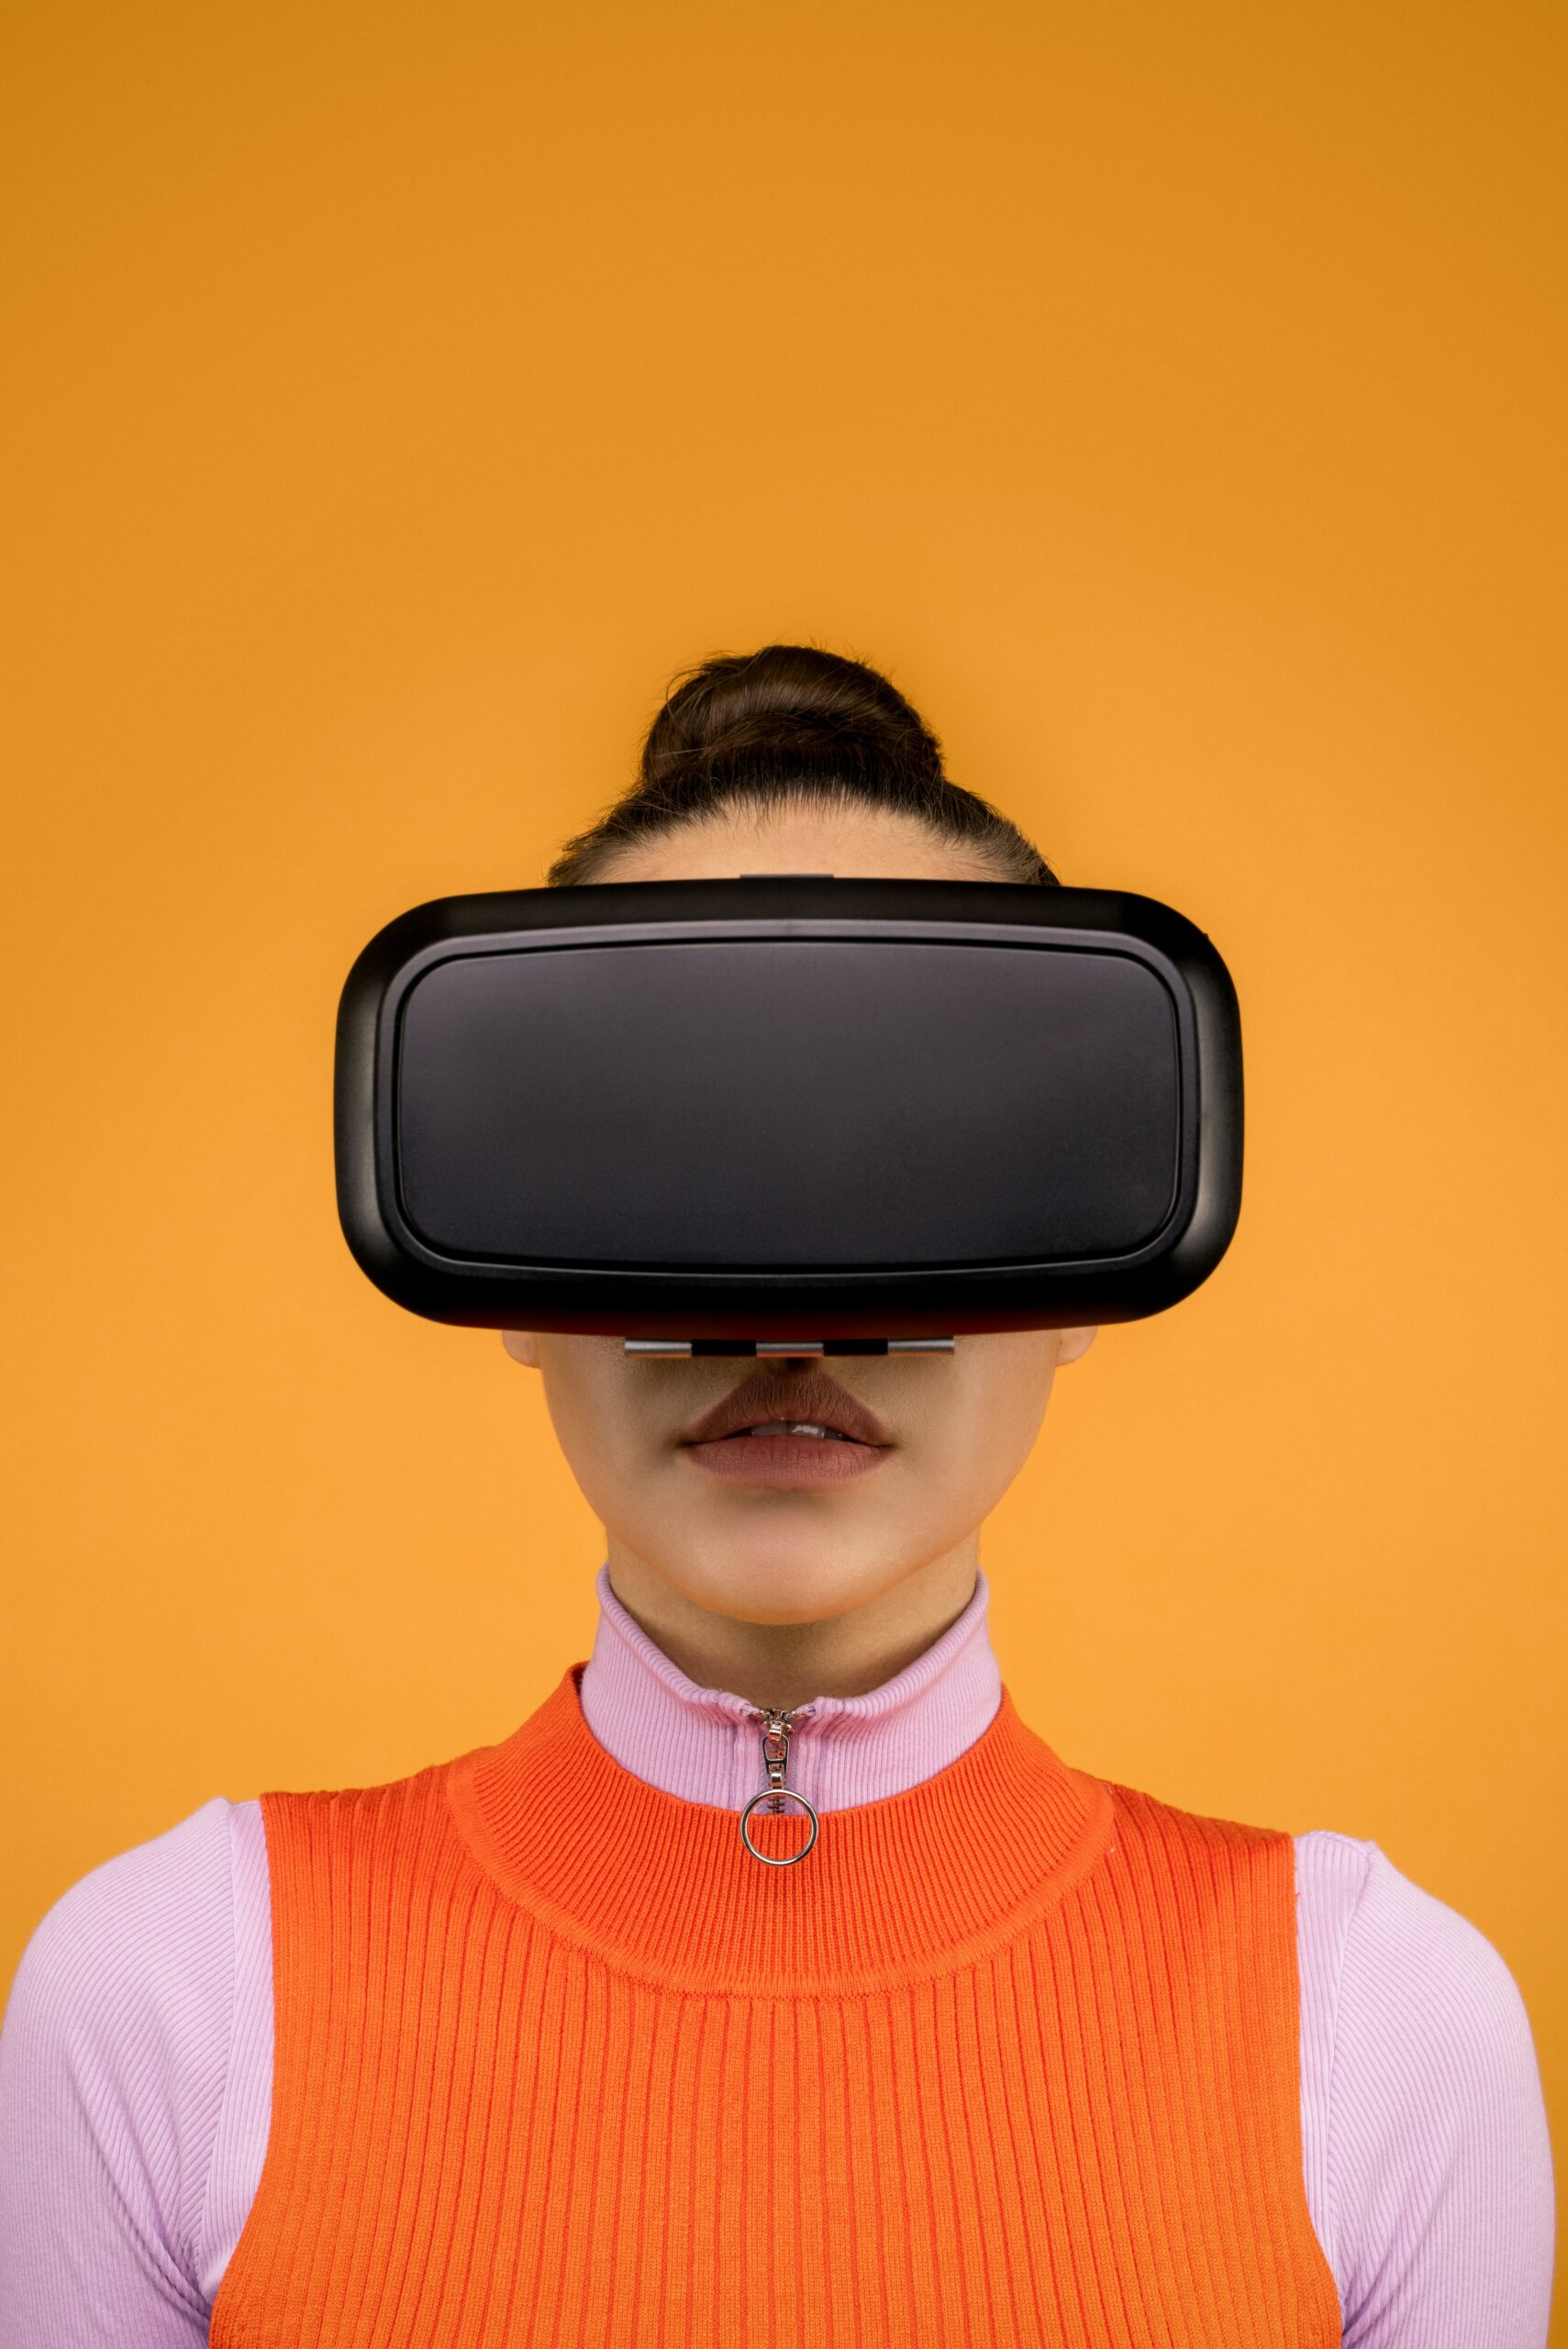  Femme casque réalité virtuelle 